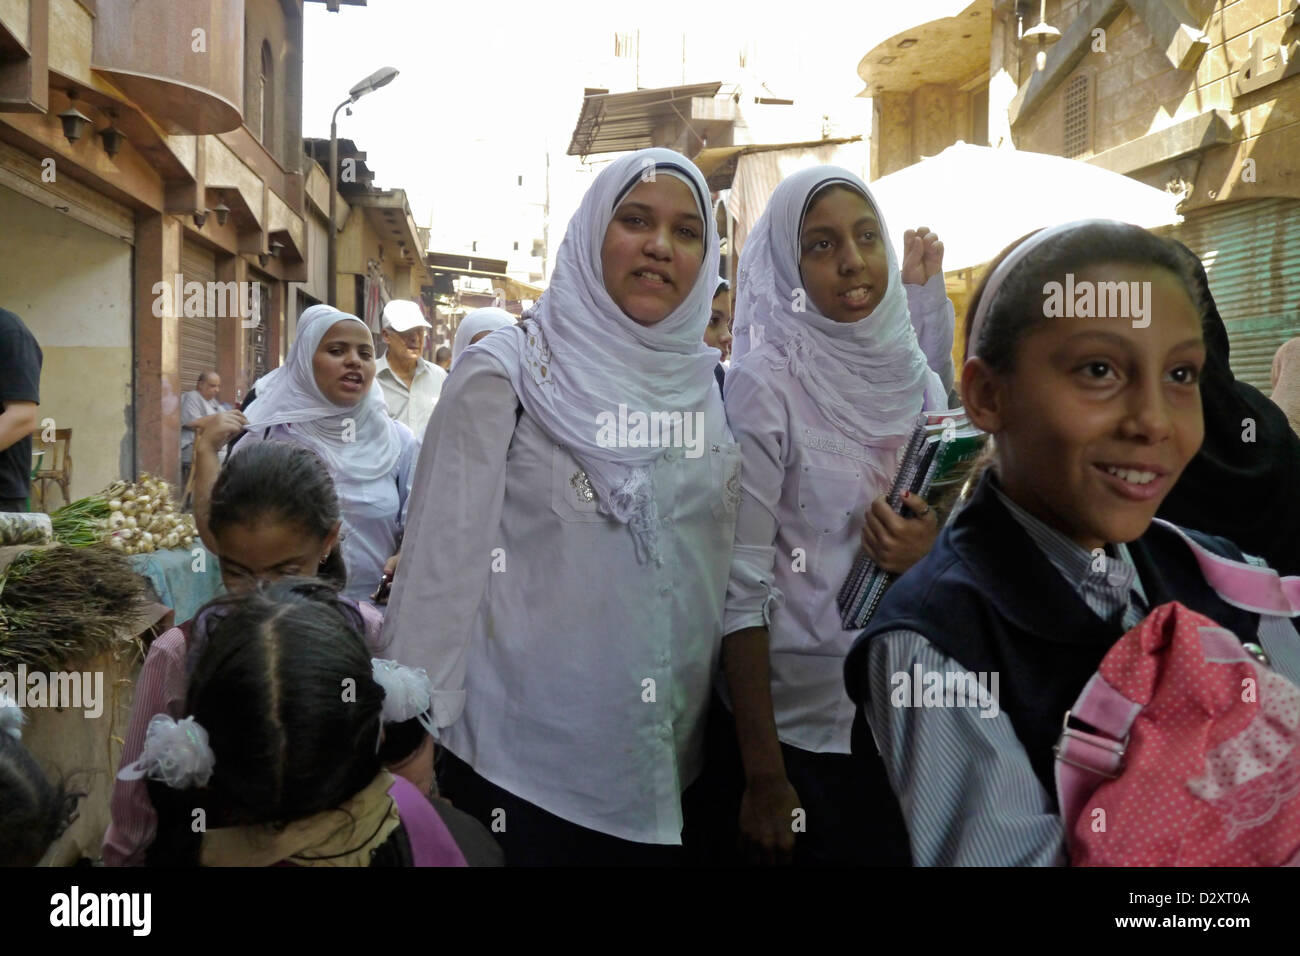 L'égypte des scènes de rue qu'on appelle le Caire islamique vieux quartier ville bab zuela school girls walking home 20120901 Banque D'Images